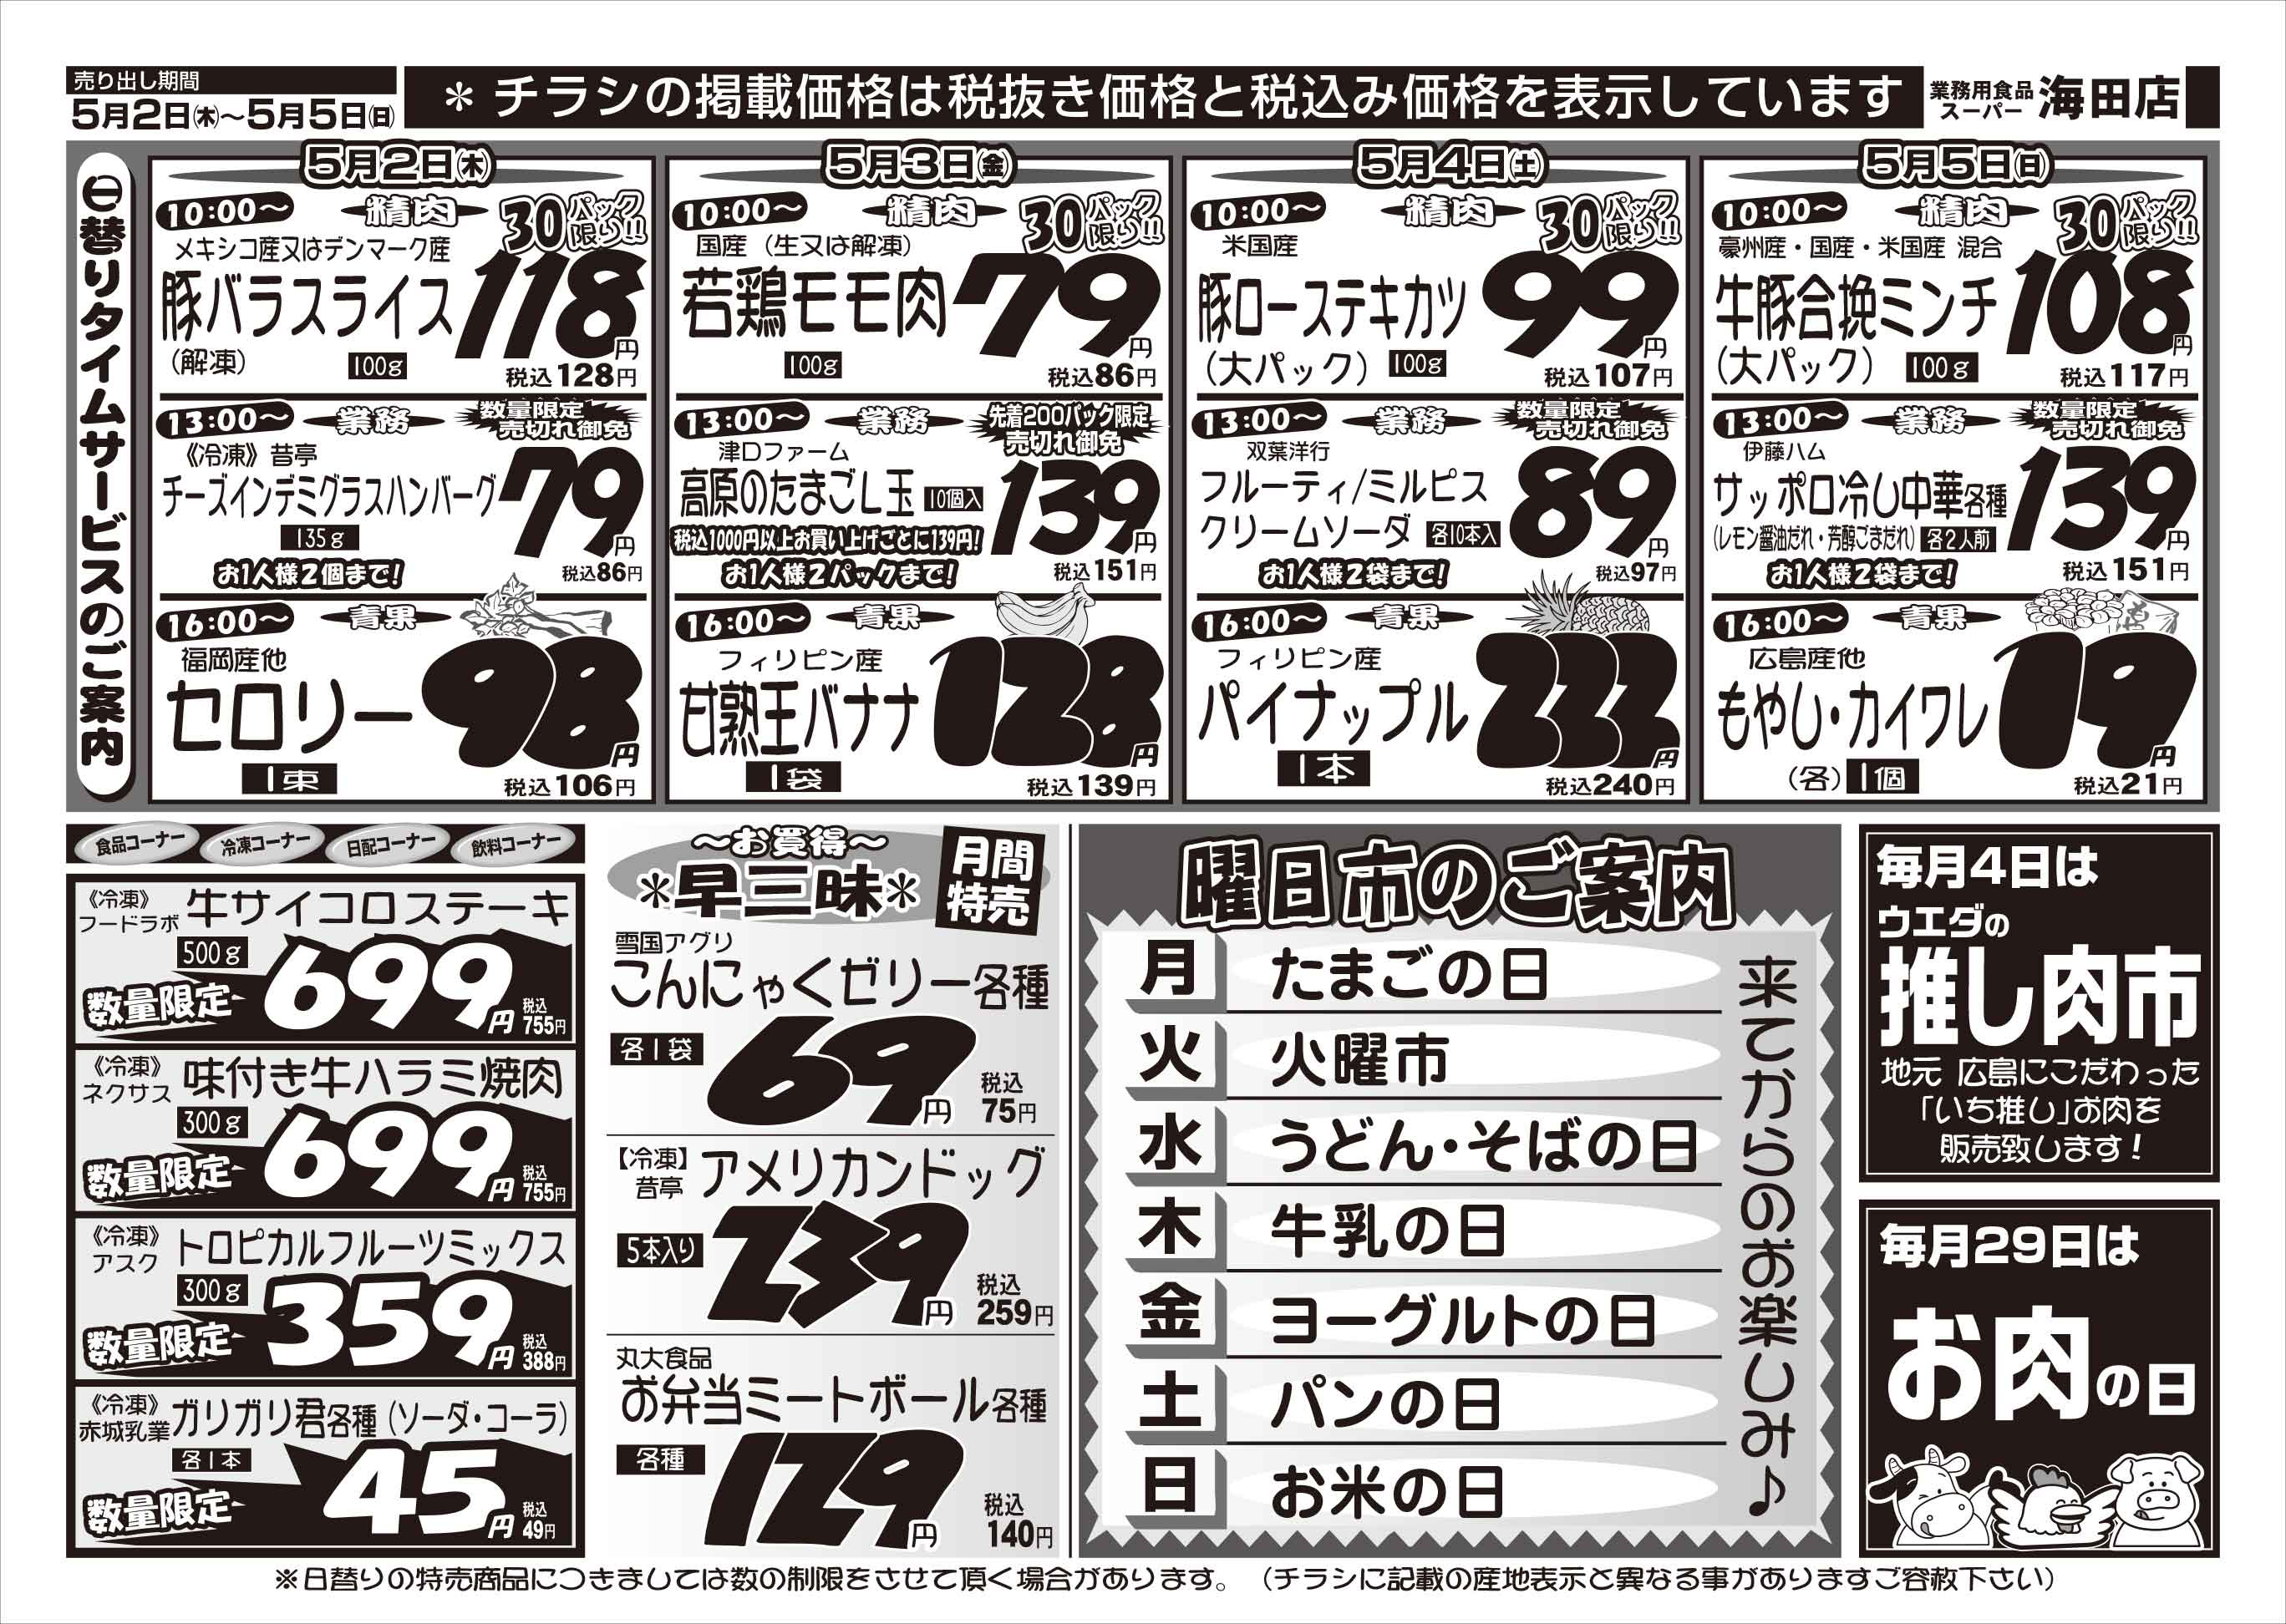 業務用食品スーパー海田店 5/2-5 週末お買い得セールチラシウラ